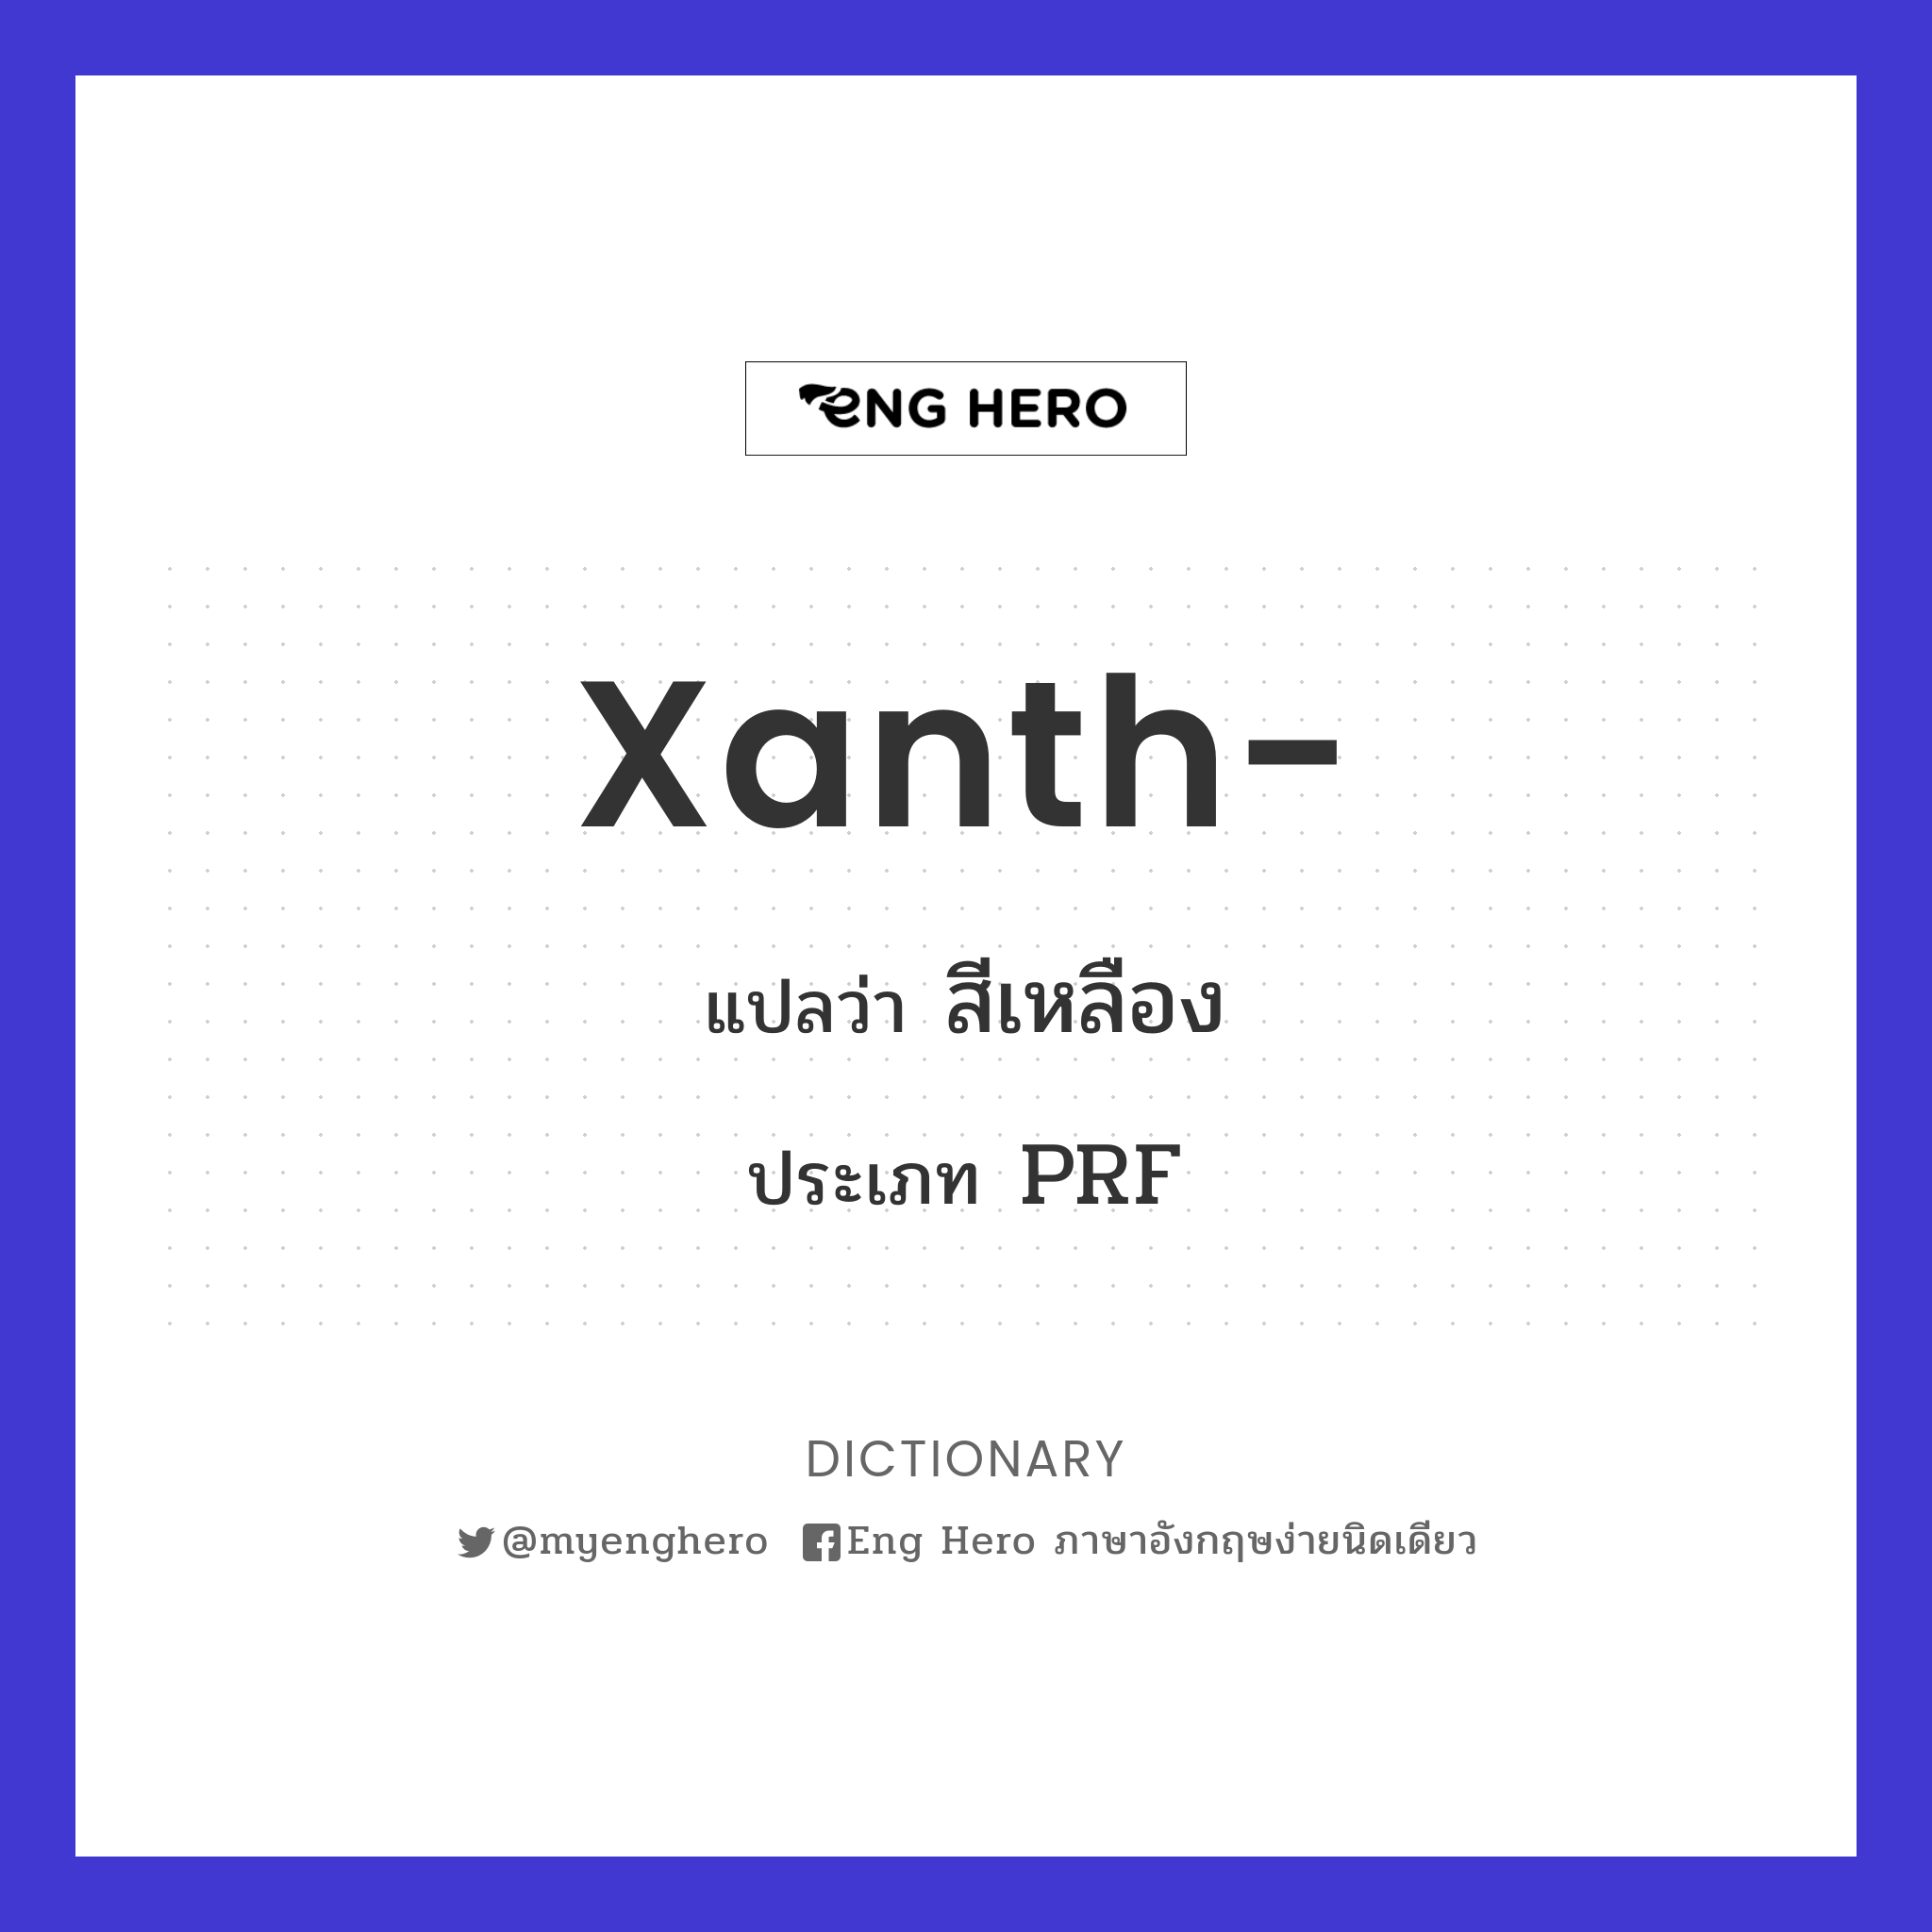 xanth-